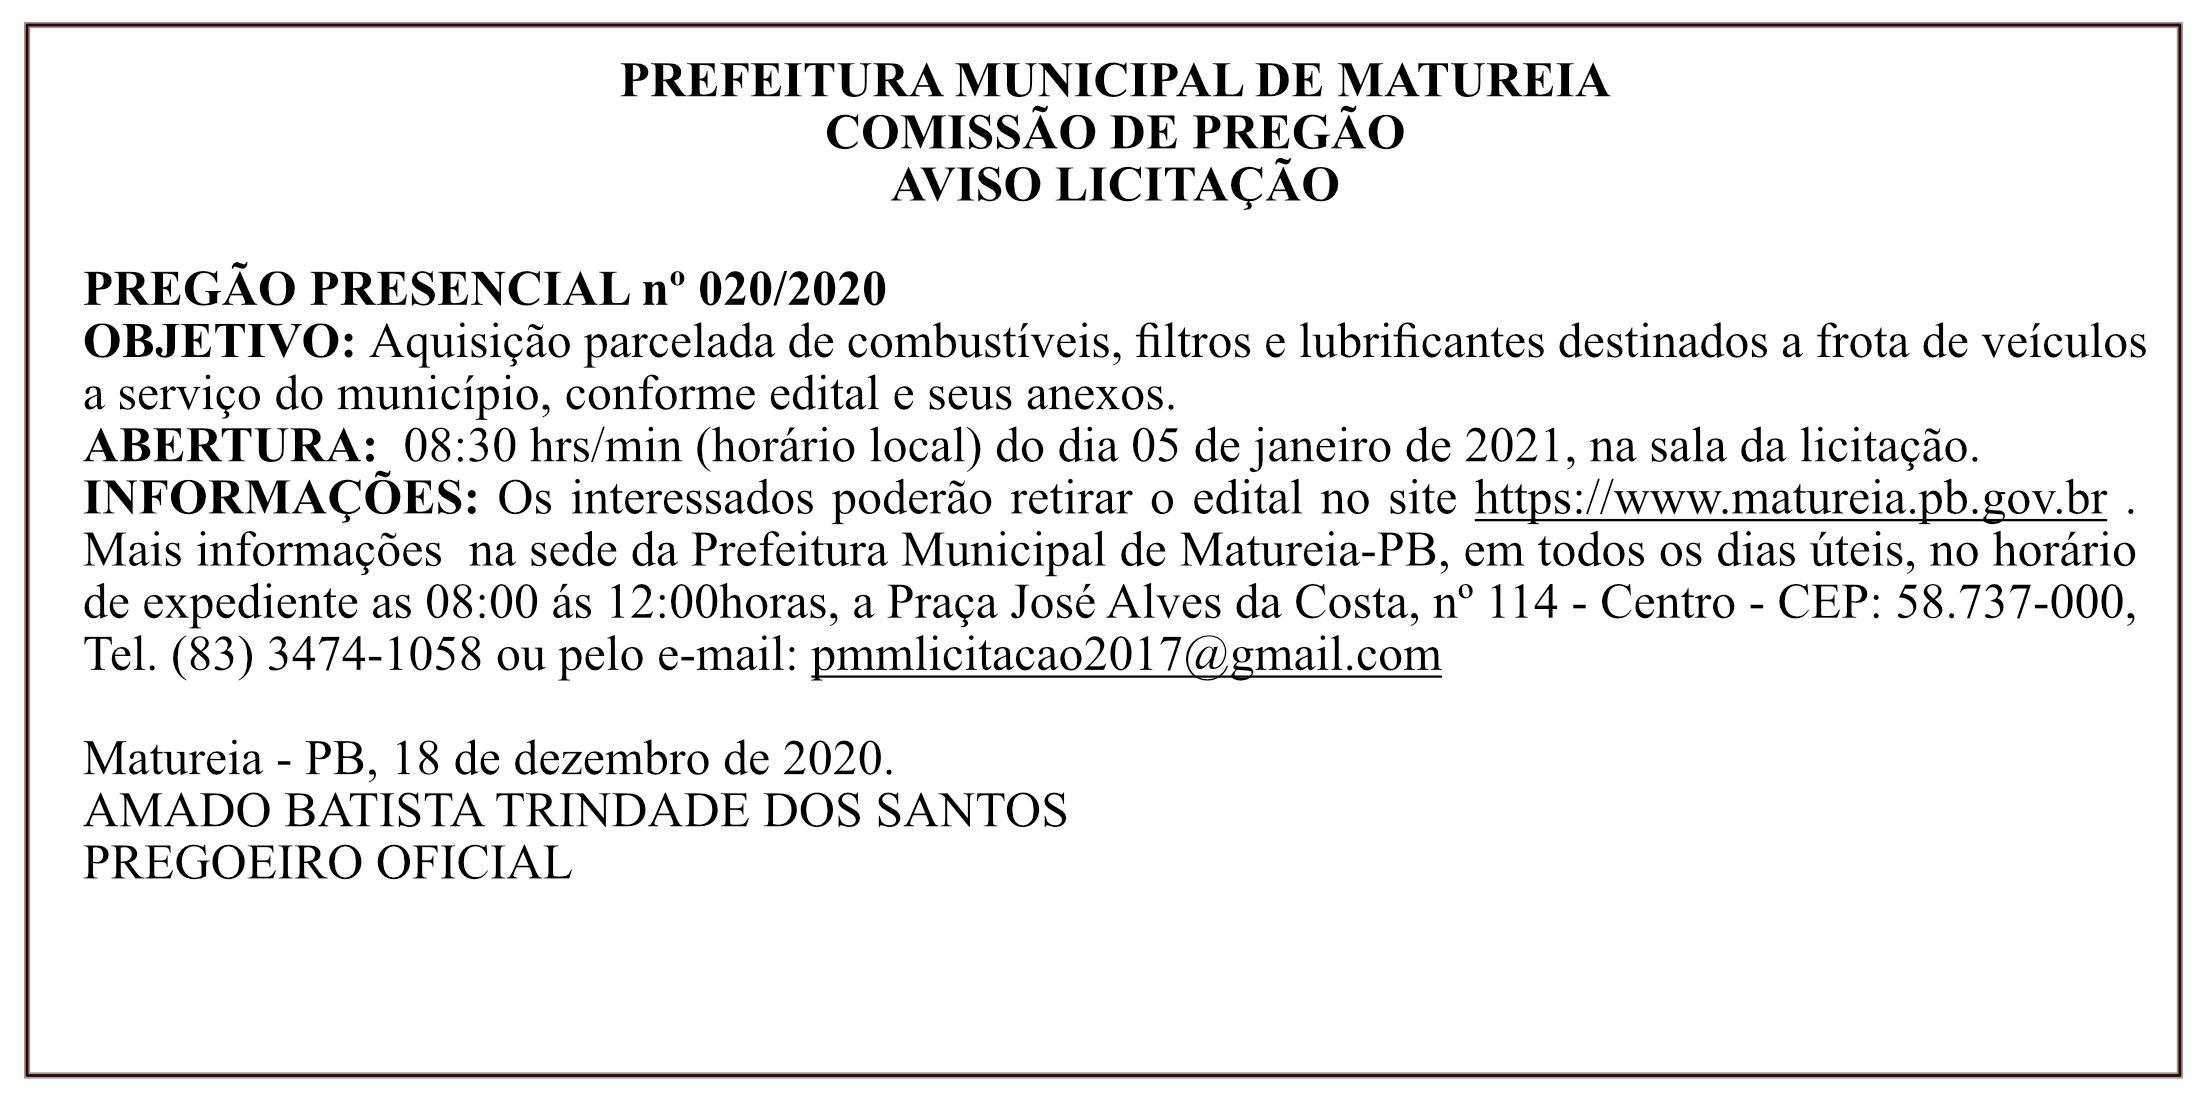 PREFEITURA MUNICIPAL DE MATUREIA – COMISSÃO DE PREGÃO – AVISO LICITAÇÃO – PREGÃO PRESENCIAL Nº 020/2020